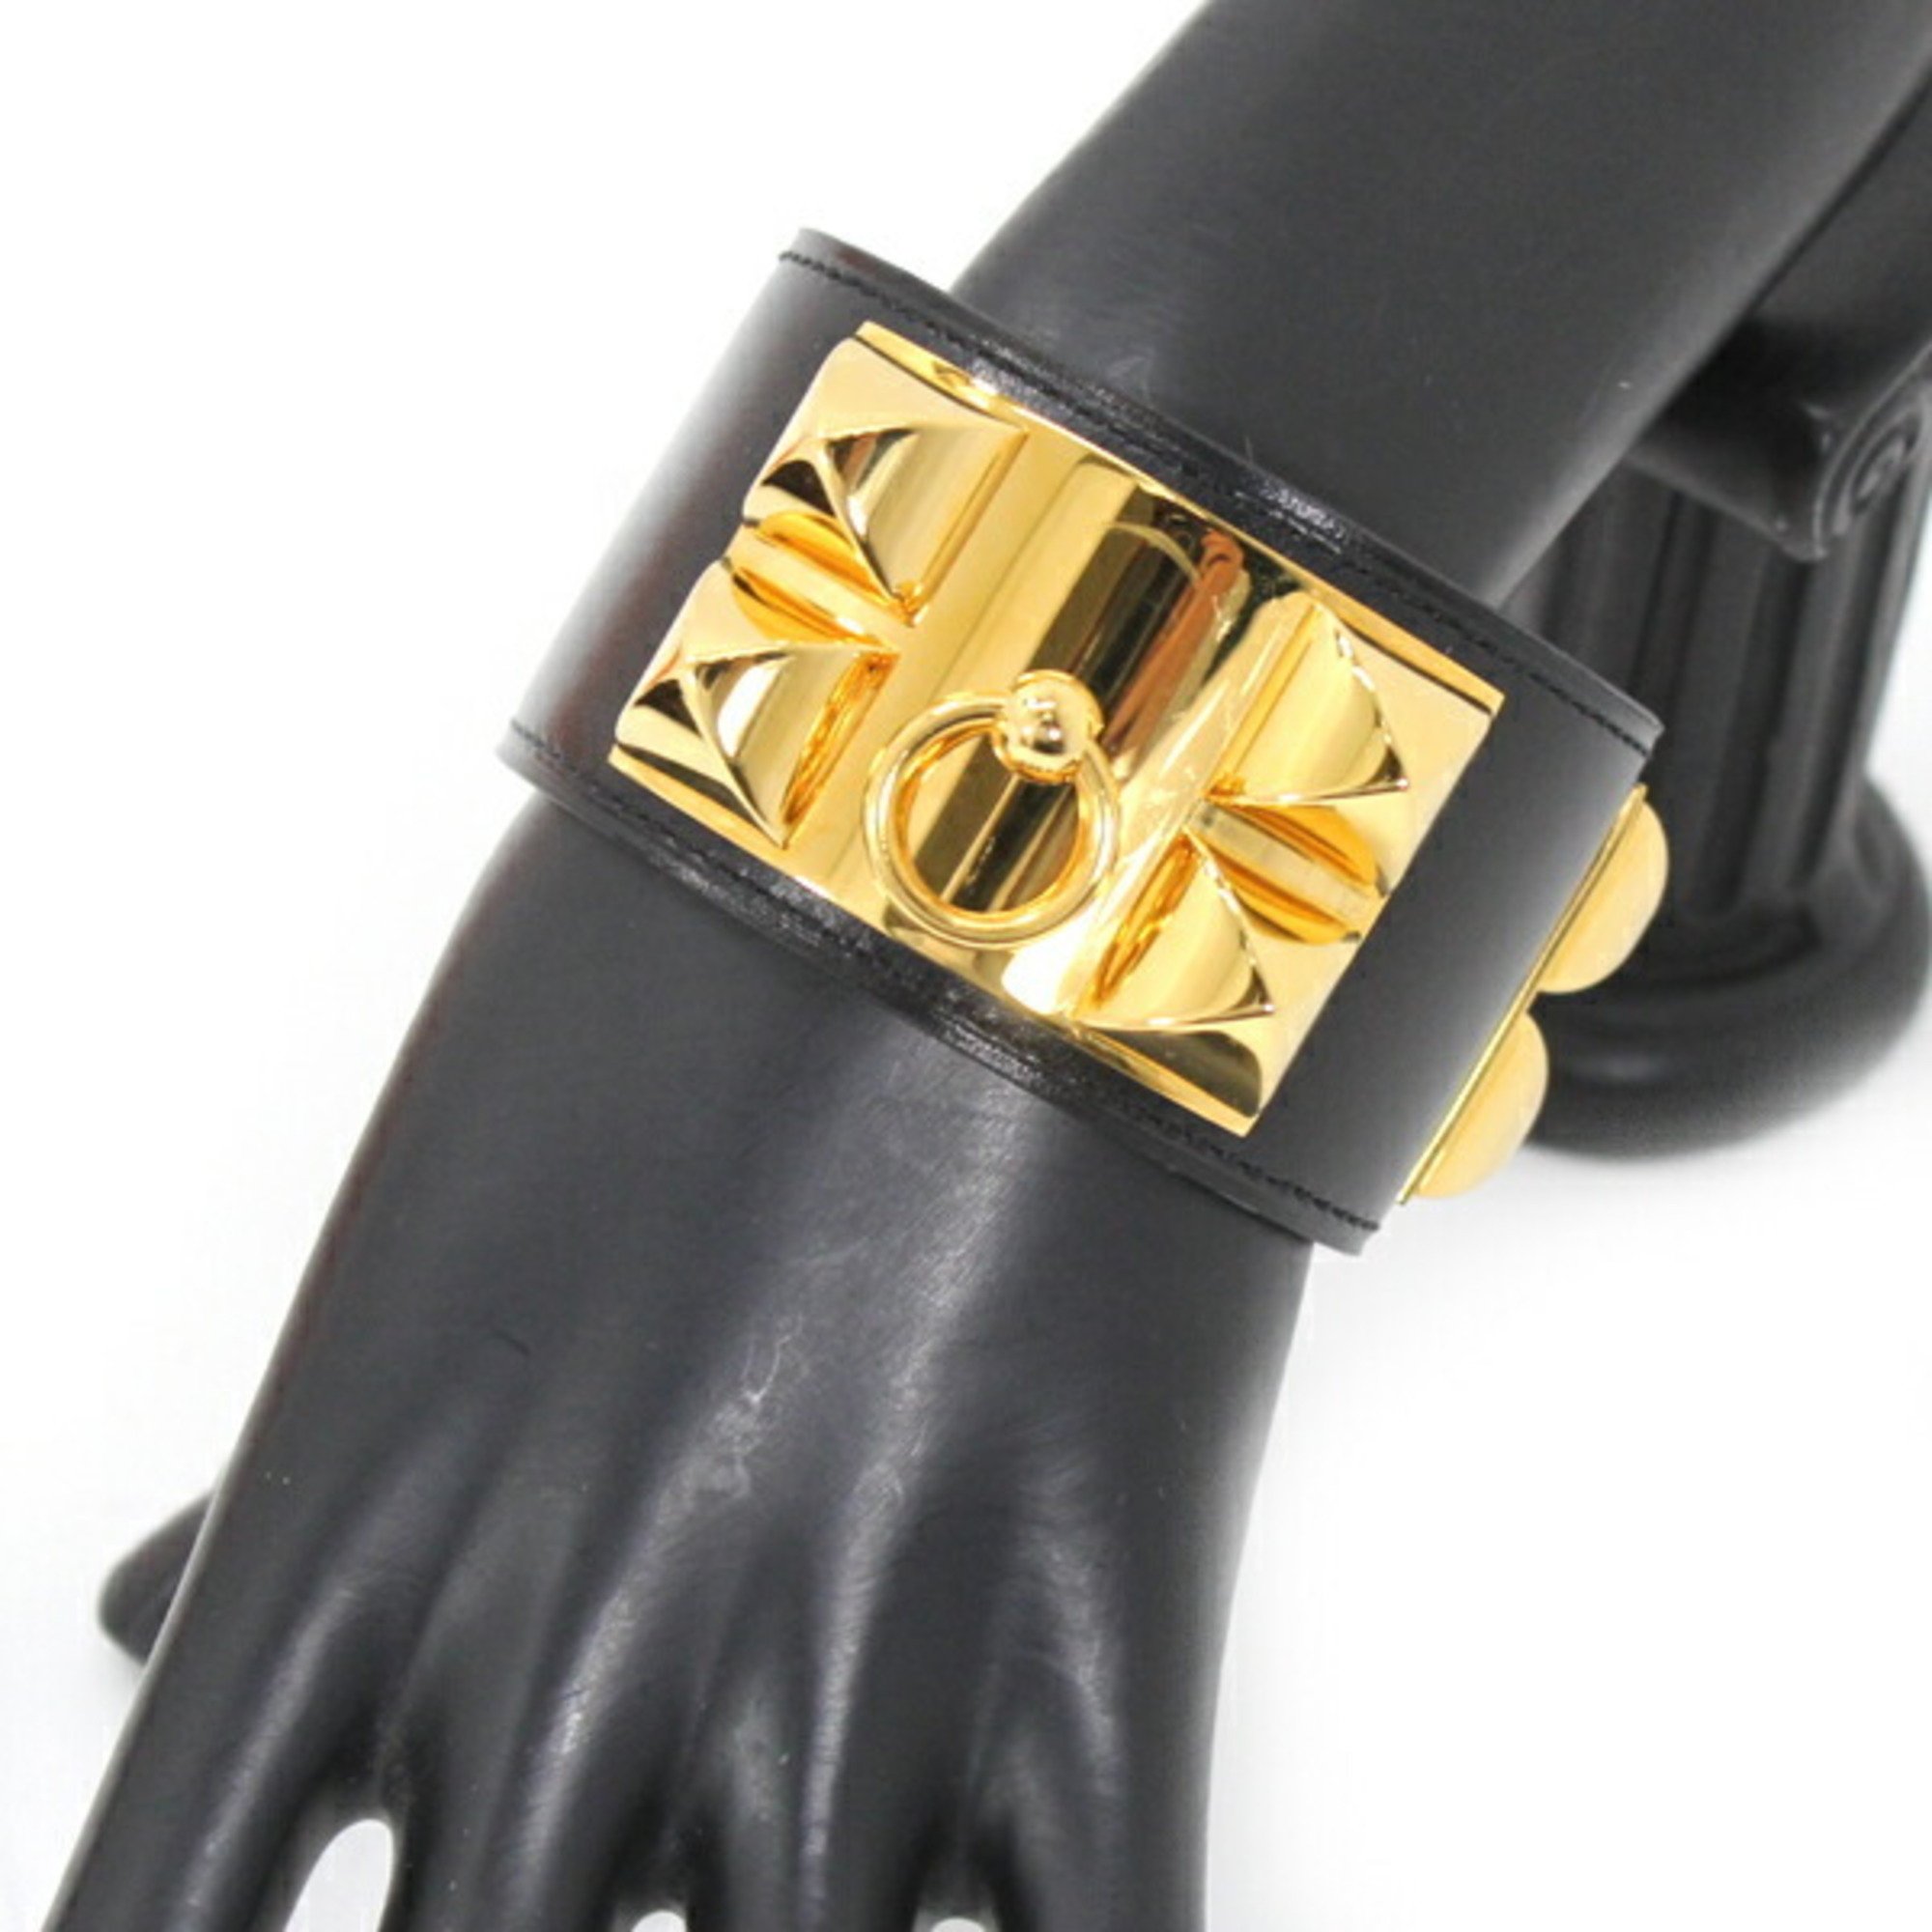 Hermes Collier de Chien Bracelet Bangle Black S Size X Engraved Calf Leather Men Women HERMES Fashion KM2662